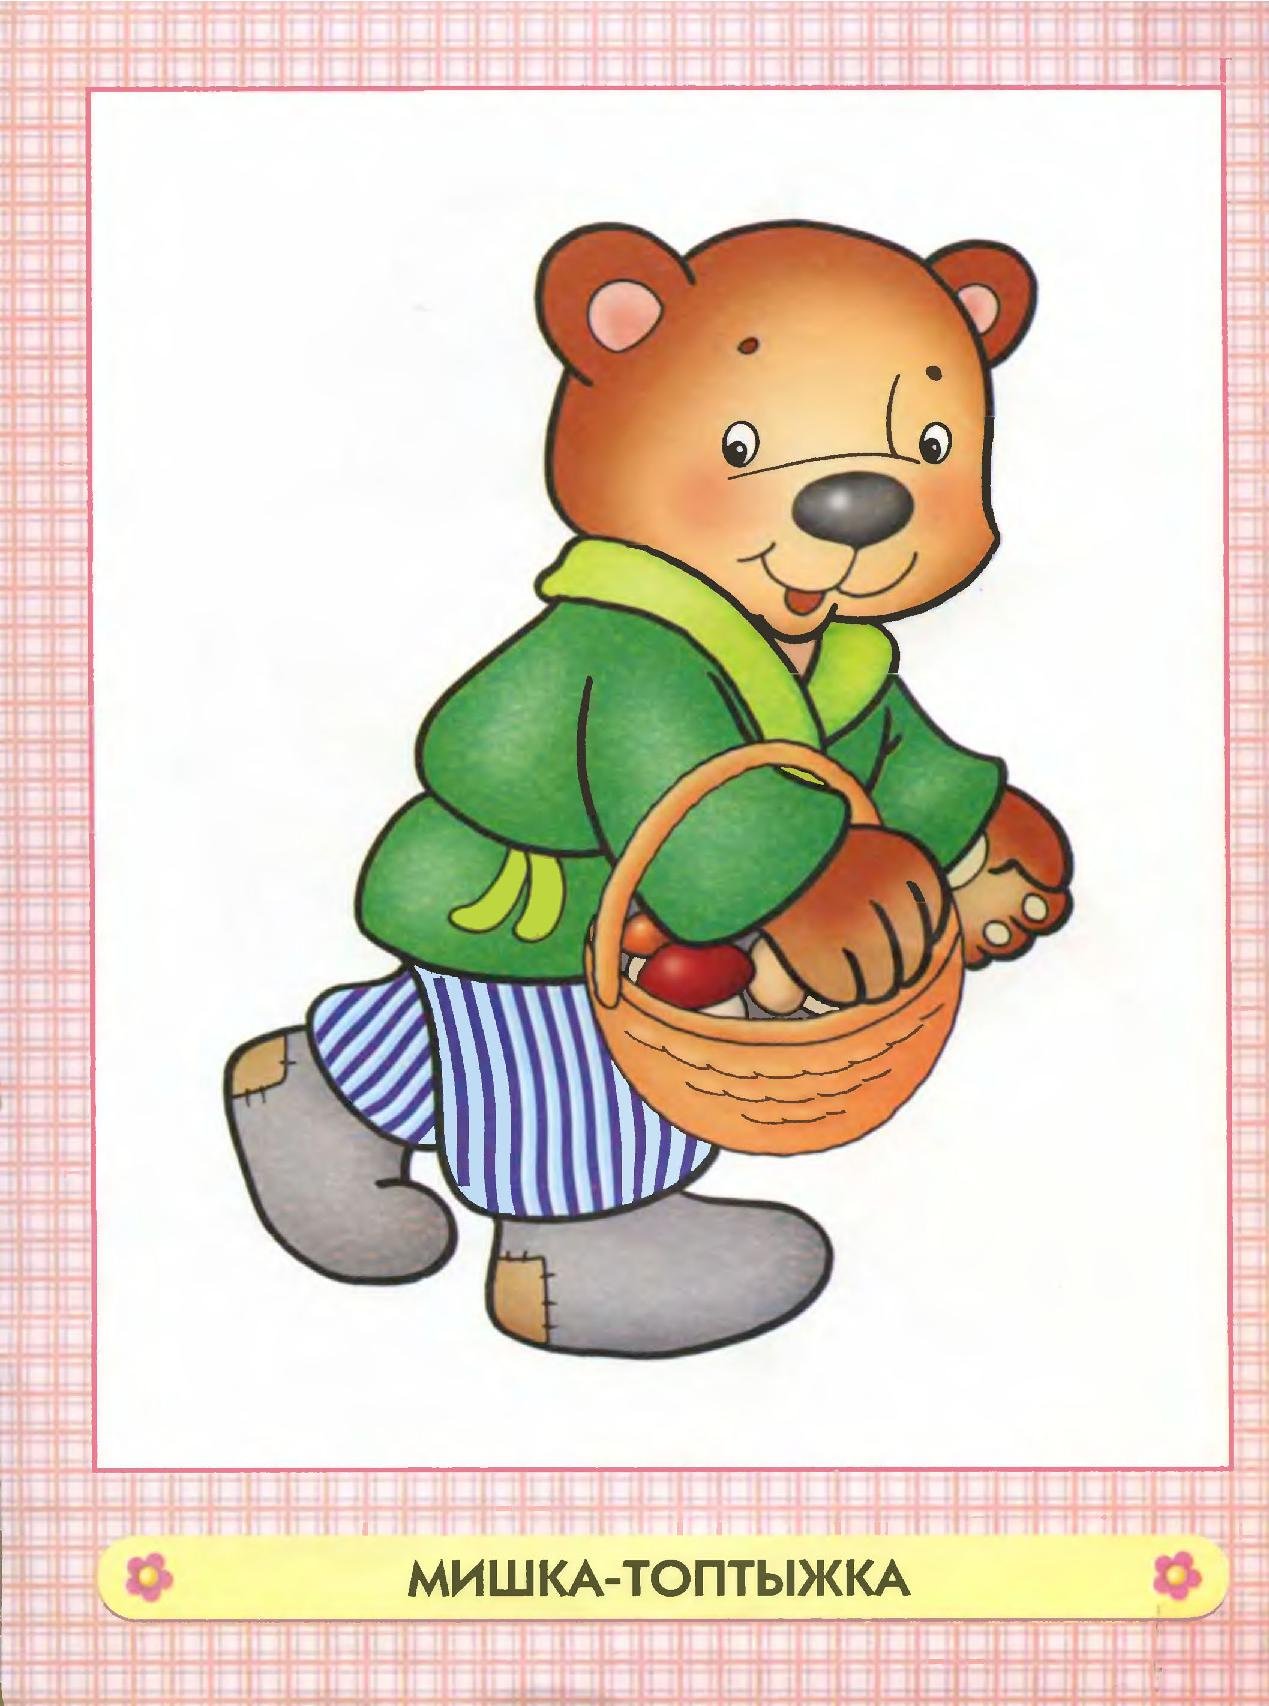 Медведь сказочный. Мишка косолапый. Медведь из сказки. Мишка картинка для детей. Мишки прямо в лоб